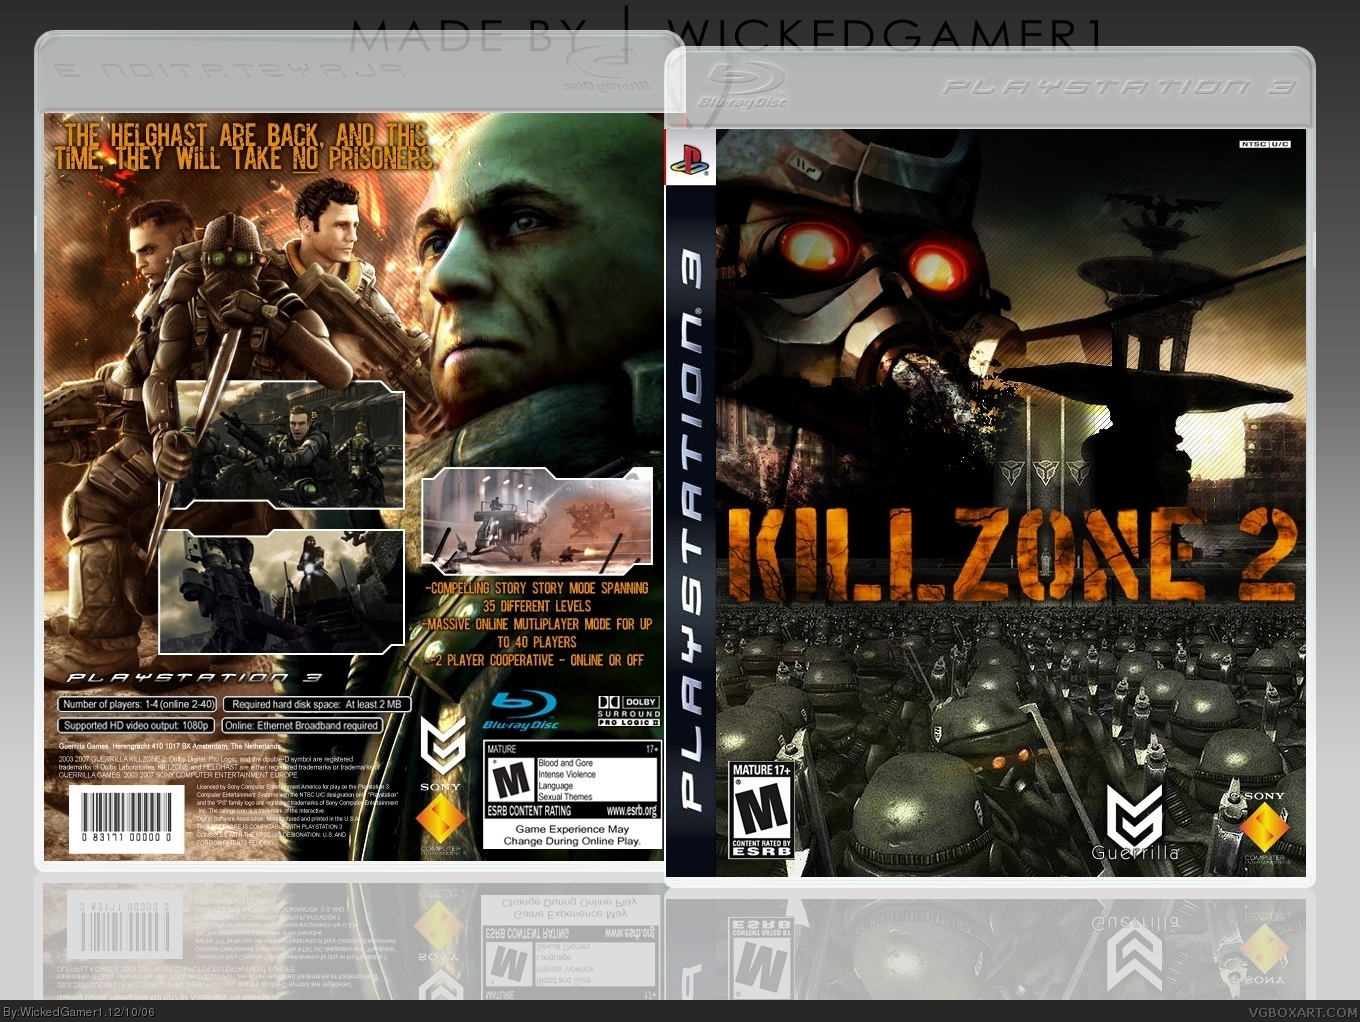 Killzone 2 box cover